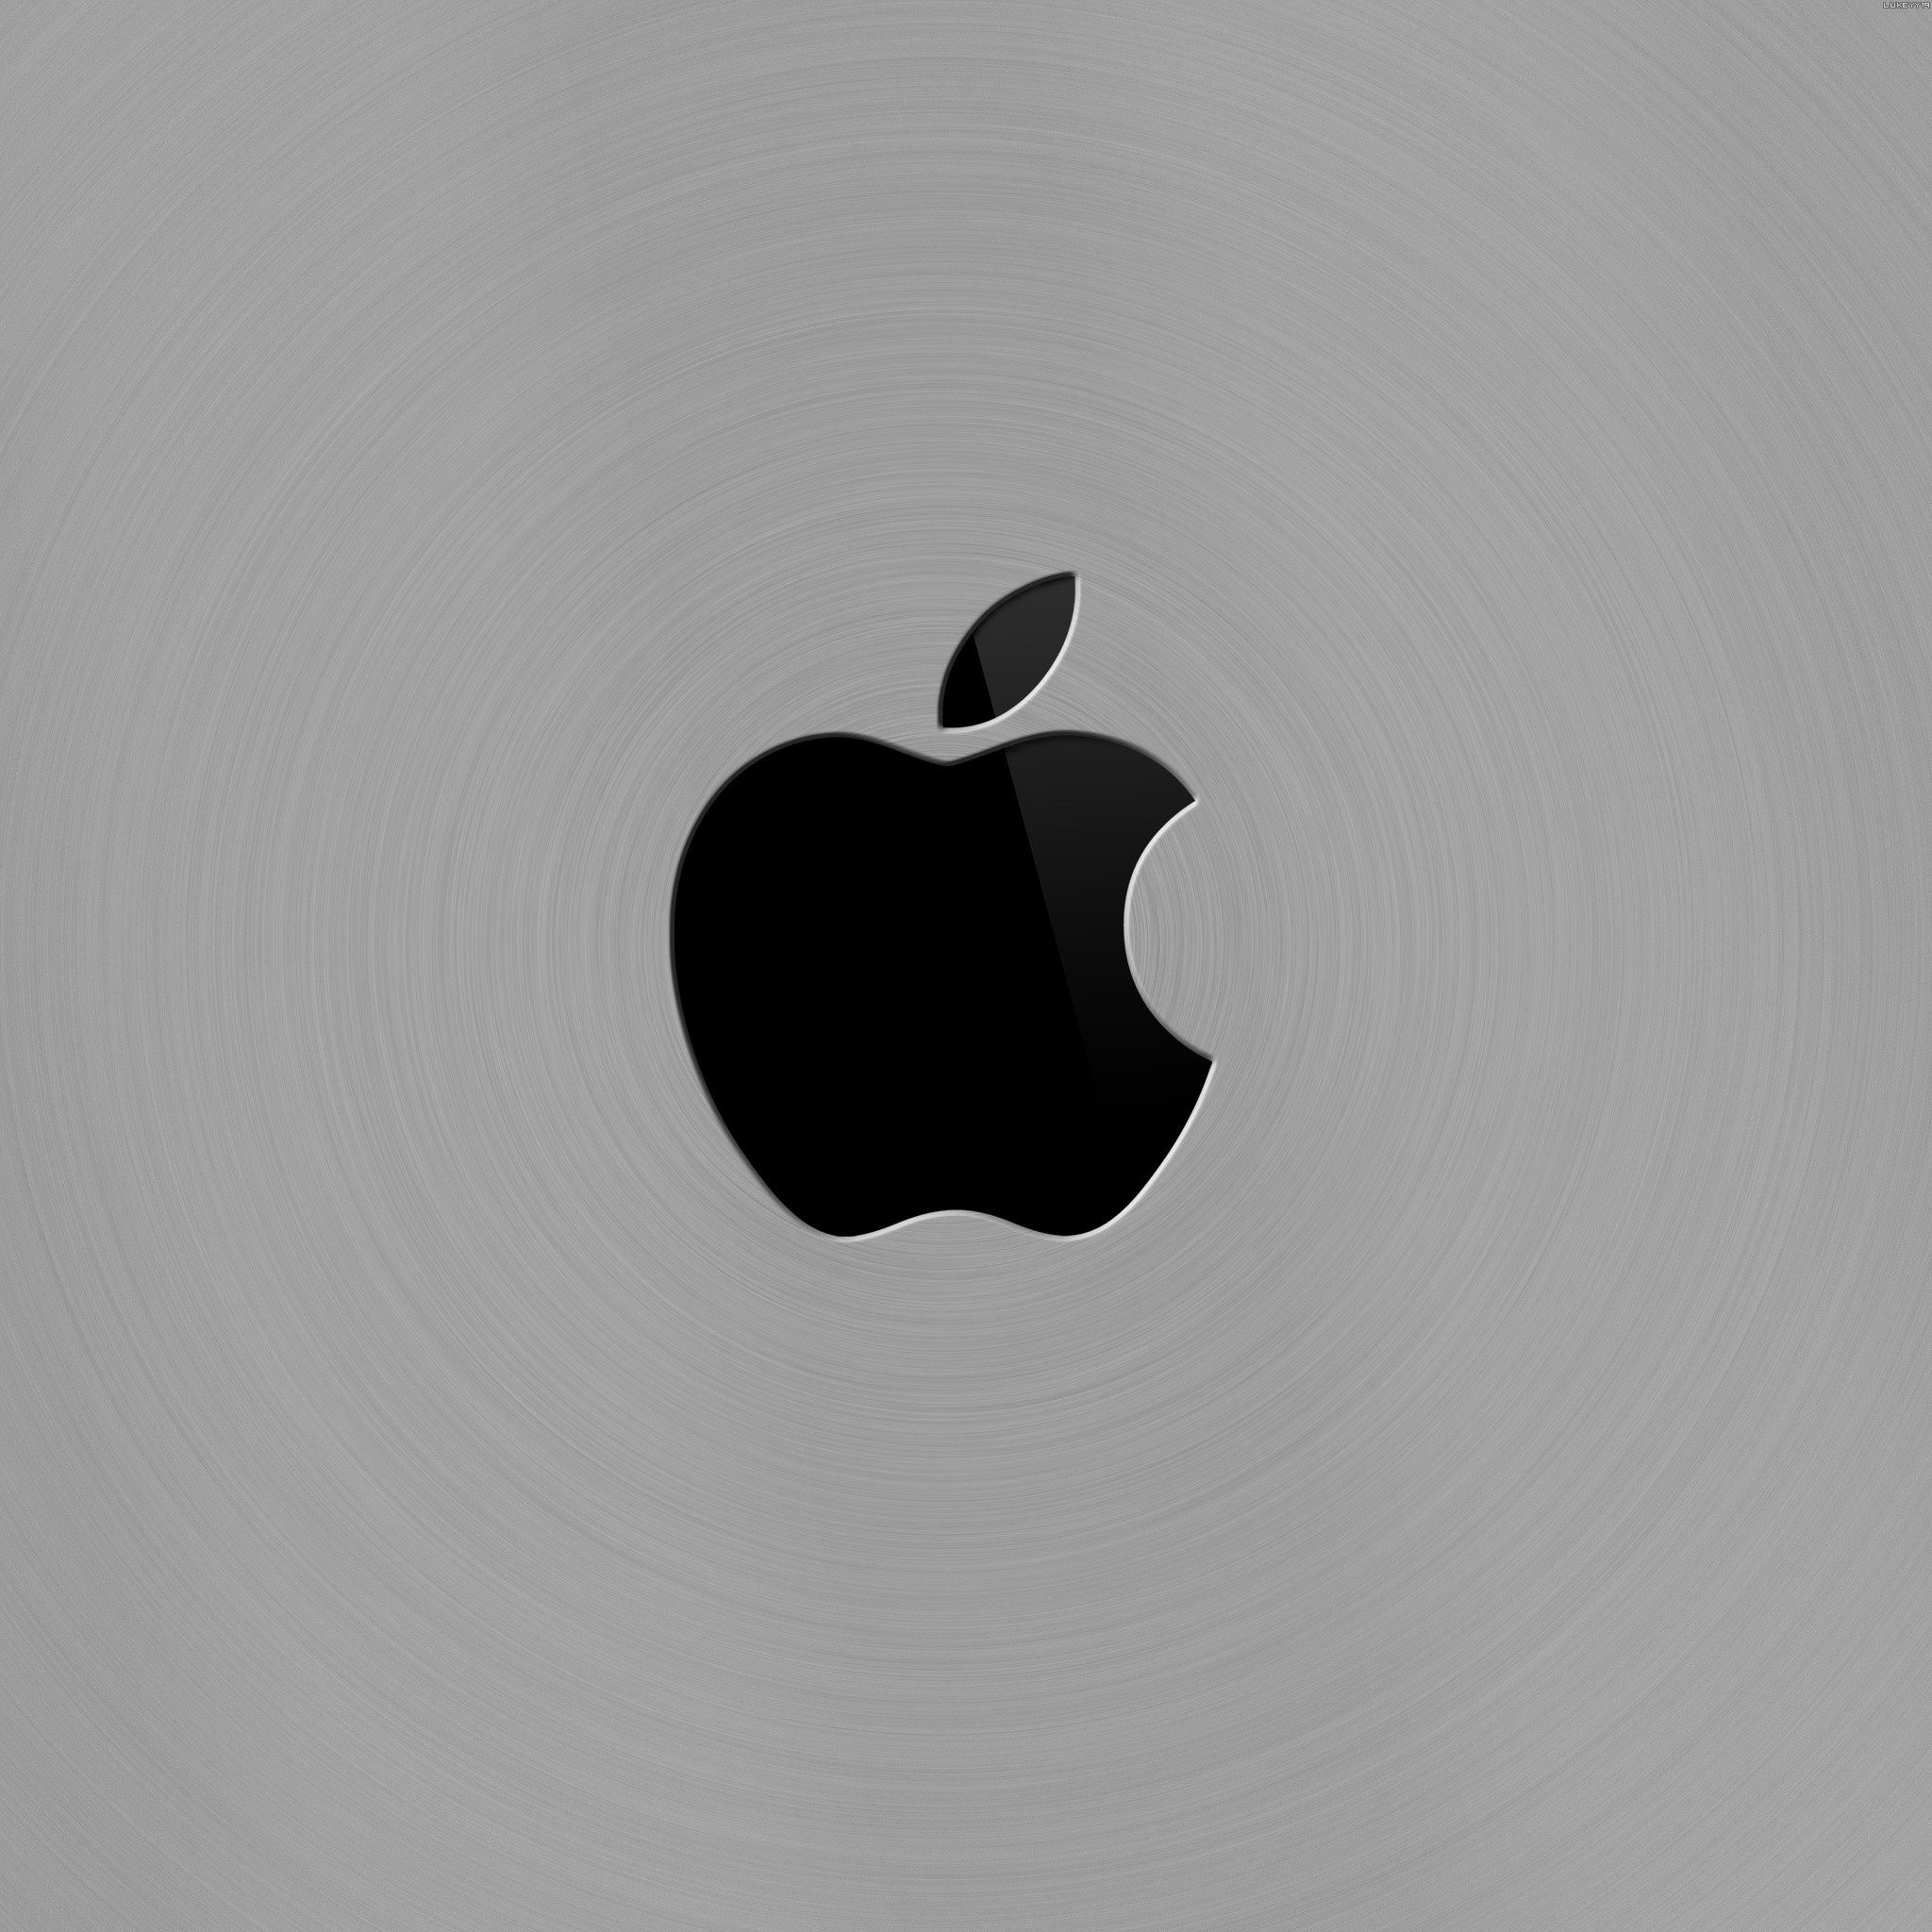 My Ipad Mini Wallpaper Hd Apple Logo CloudPix